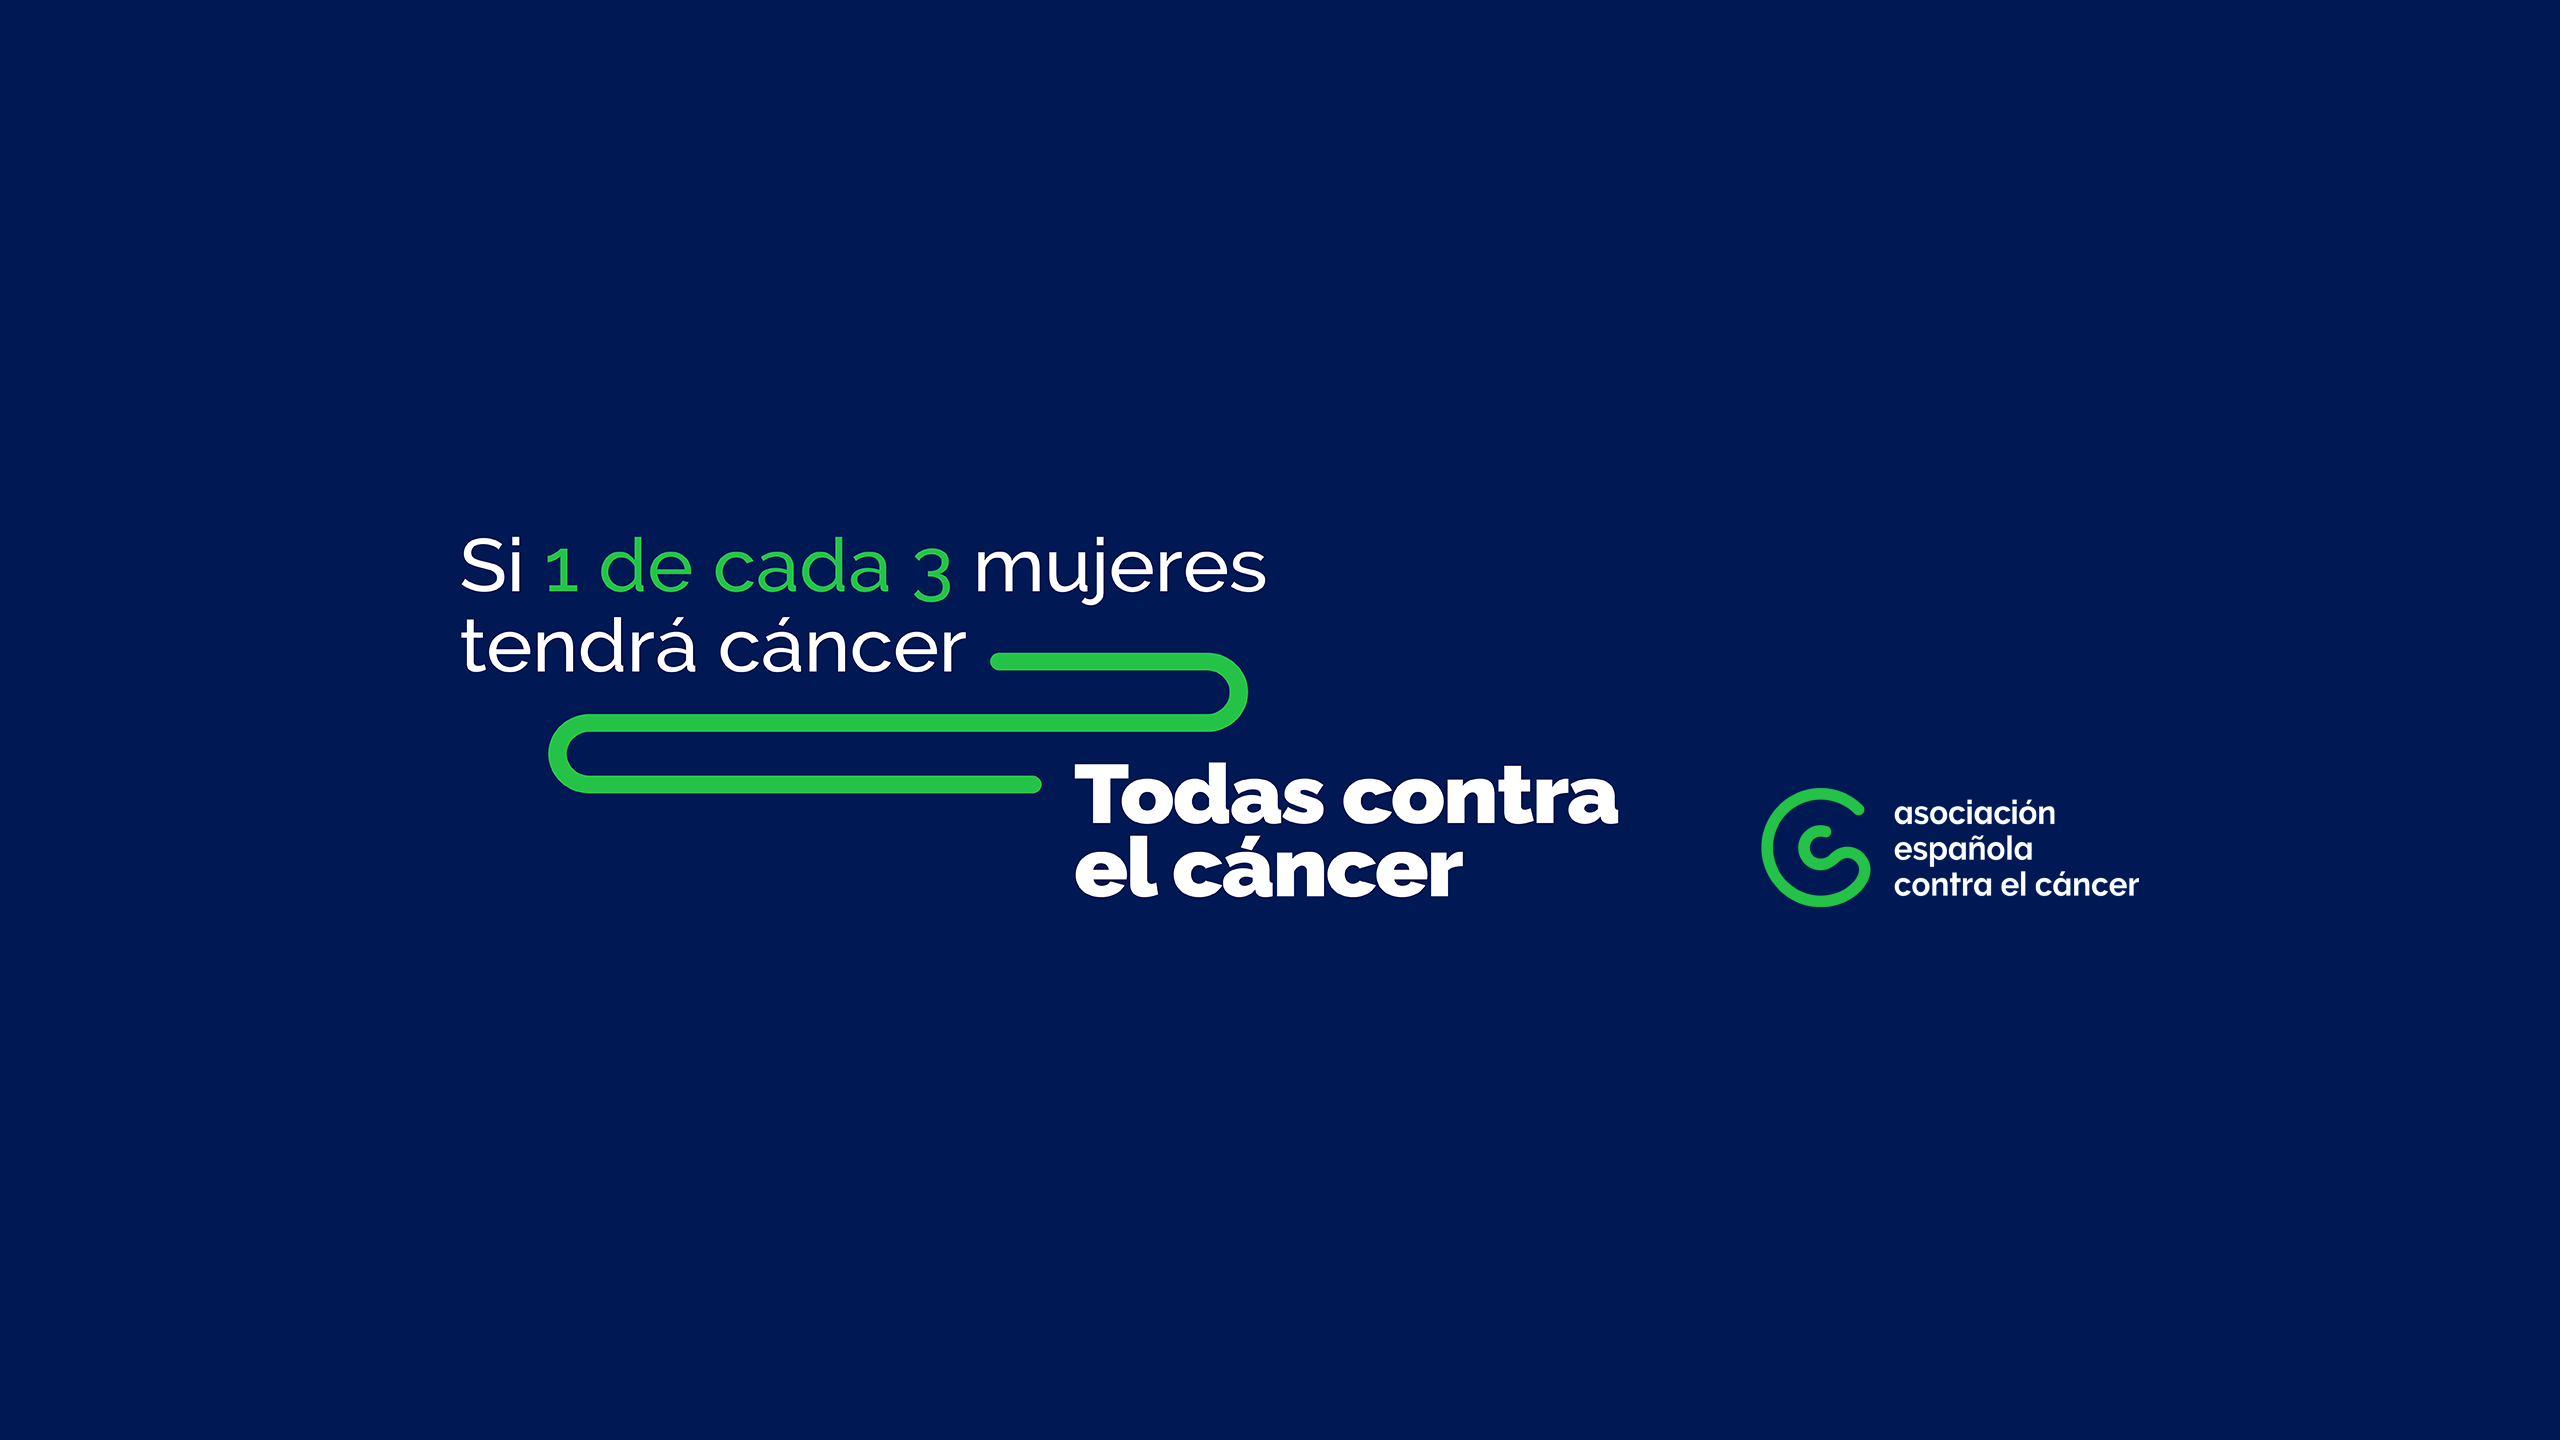 Campaña Todos contra el cáncer